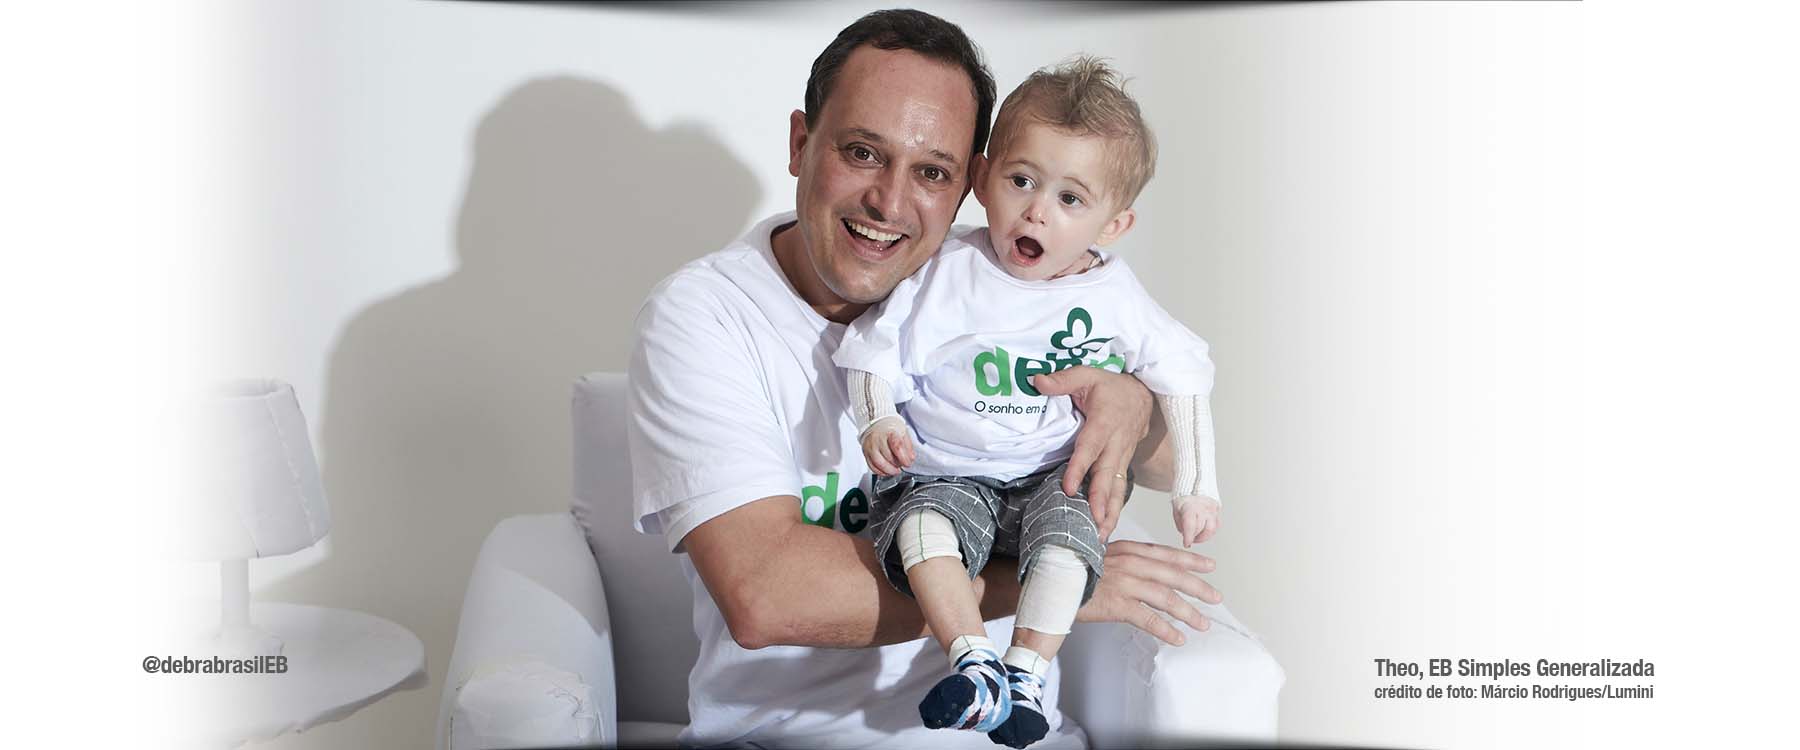 Theo, bebê com epidermólise bolhosa (EB) simples generalizada, com curativos nos dois braços e nos joelhos, sorrindo no colo do seu tio Leandro, presidente da DEBRA